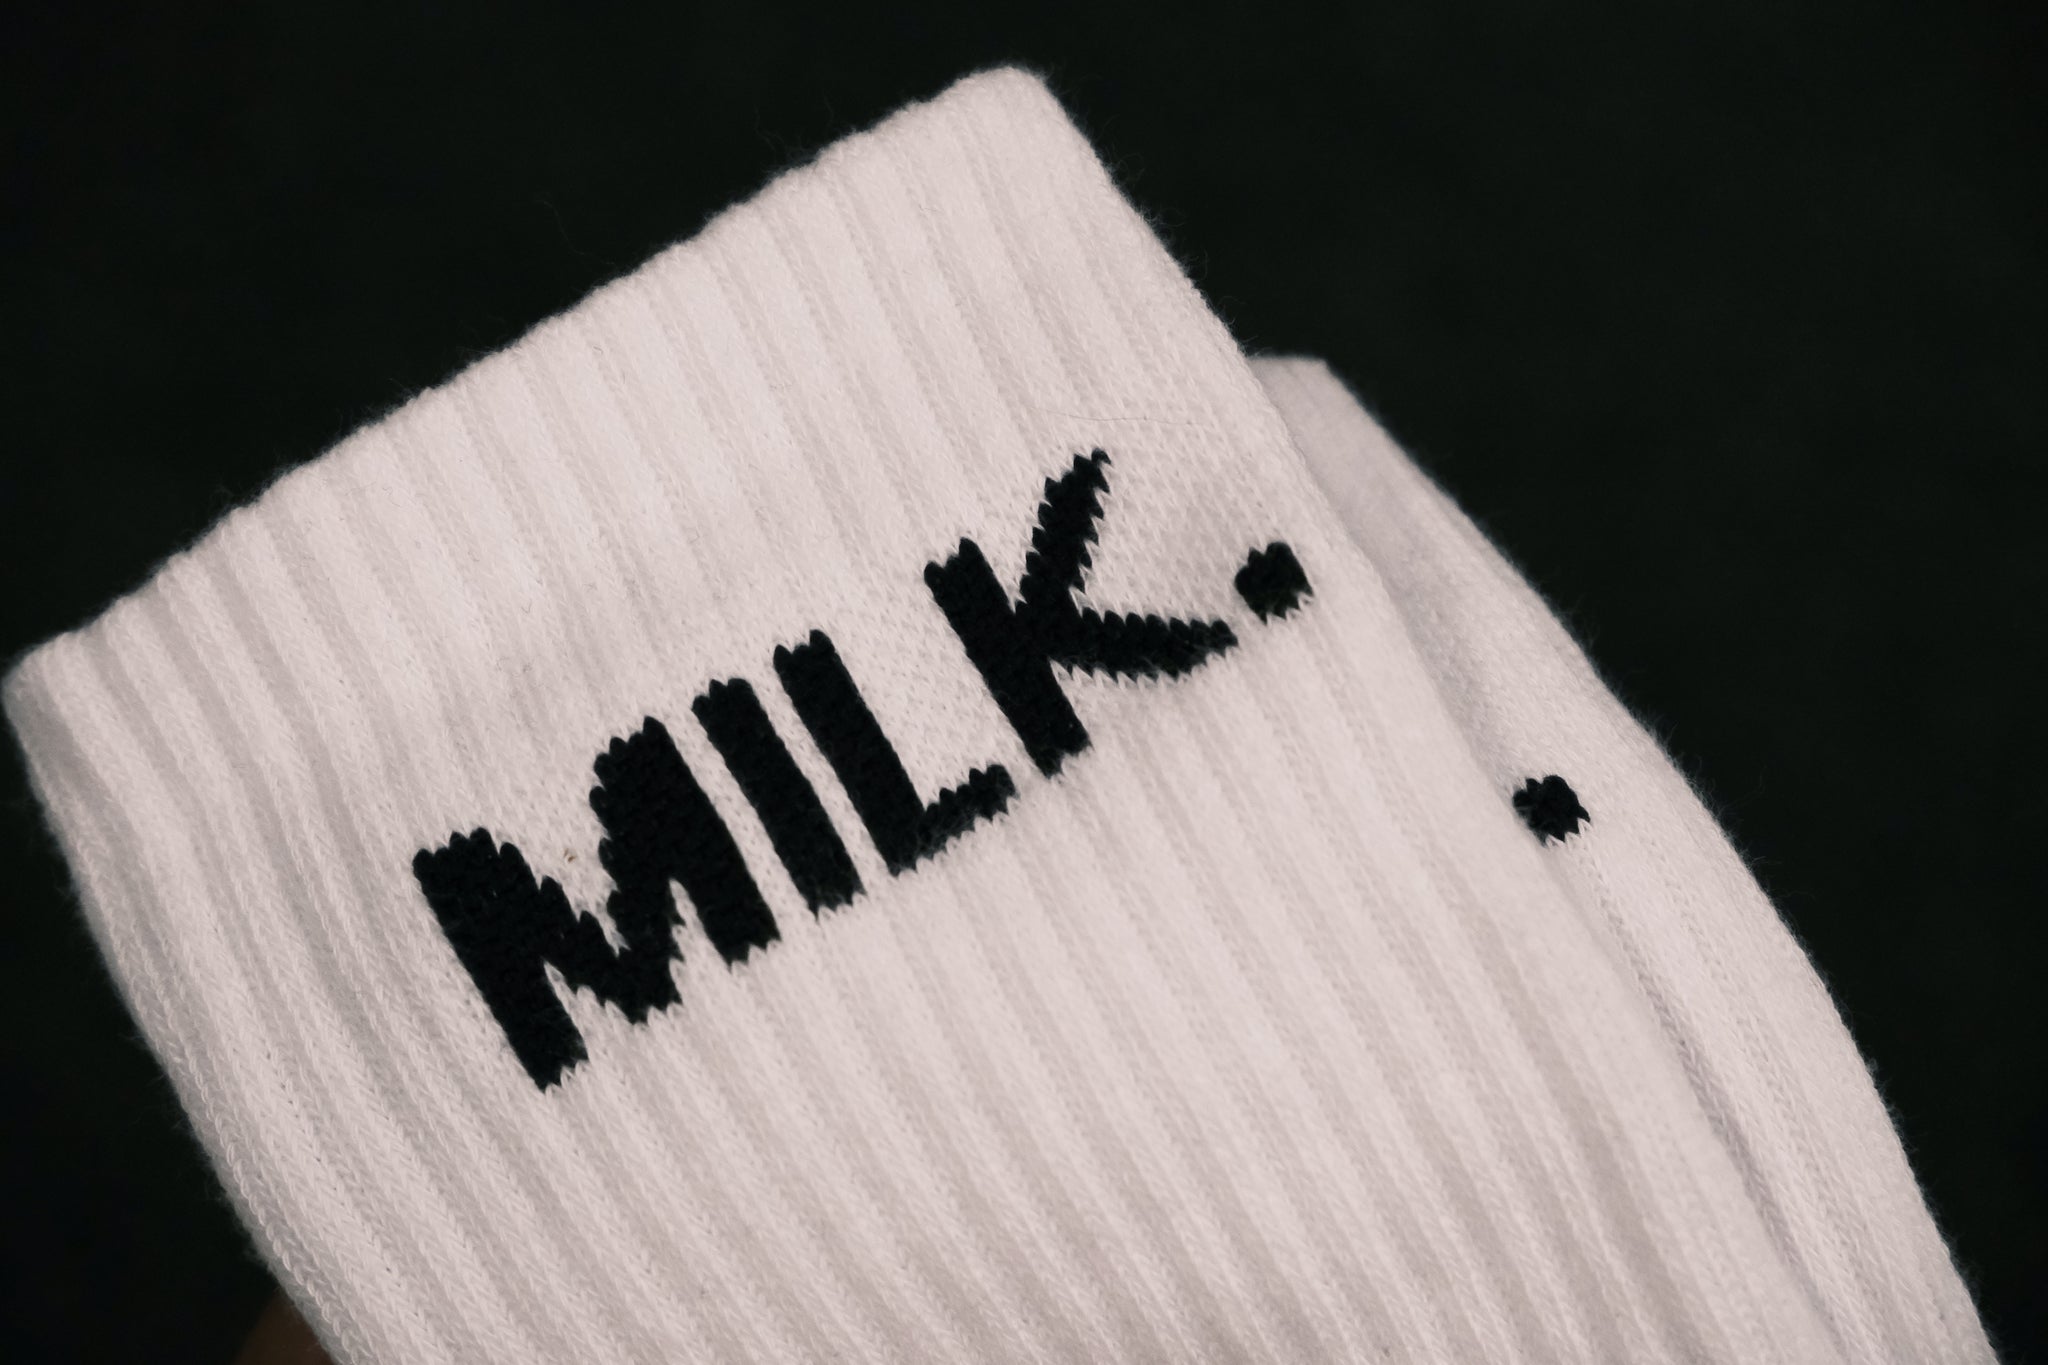 milk.clothing company – milk. clothingcompany